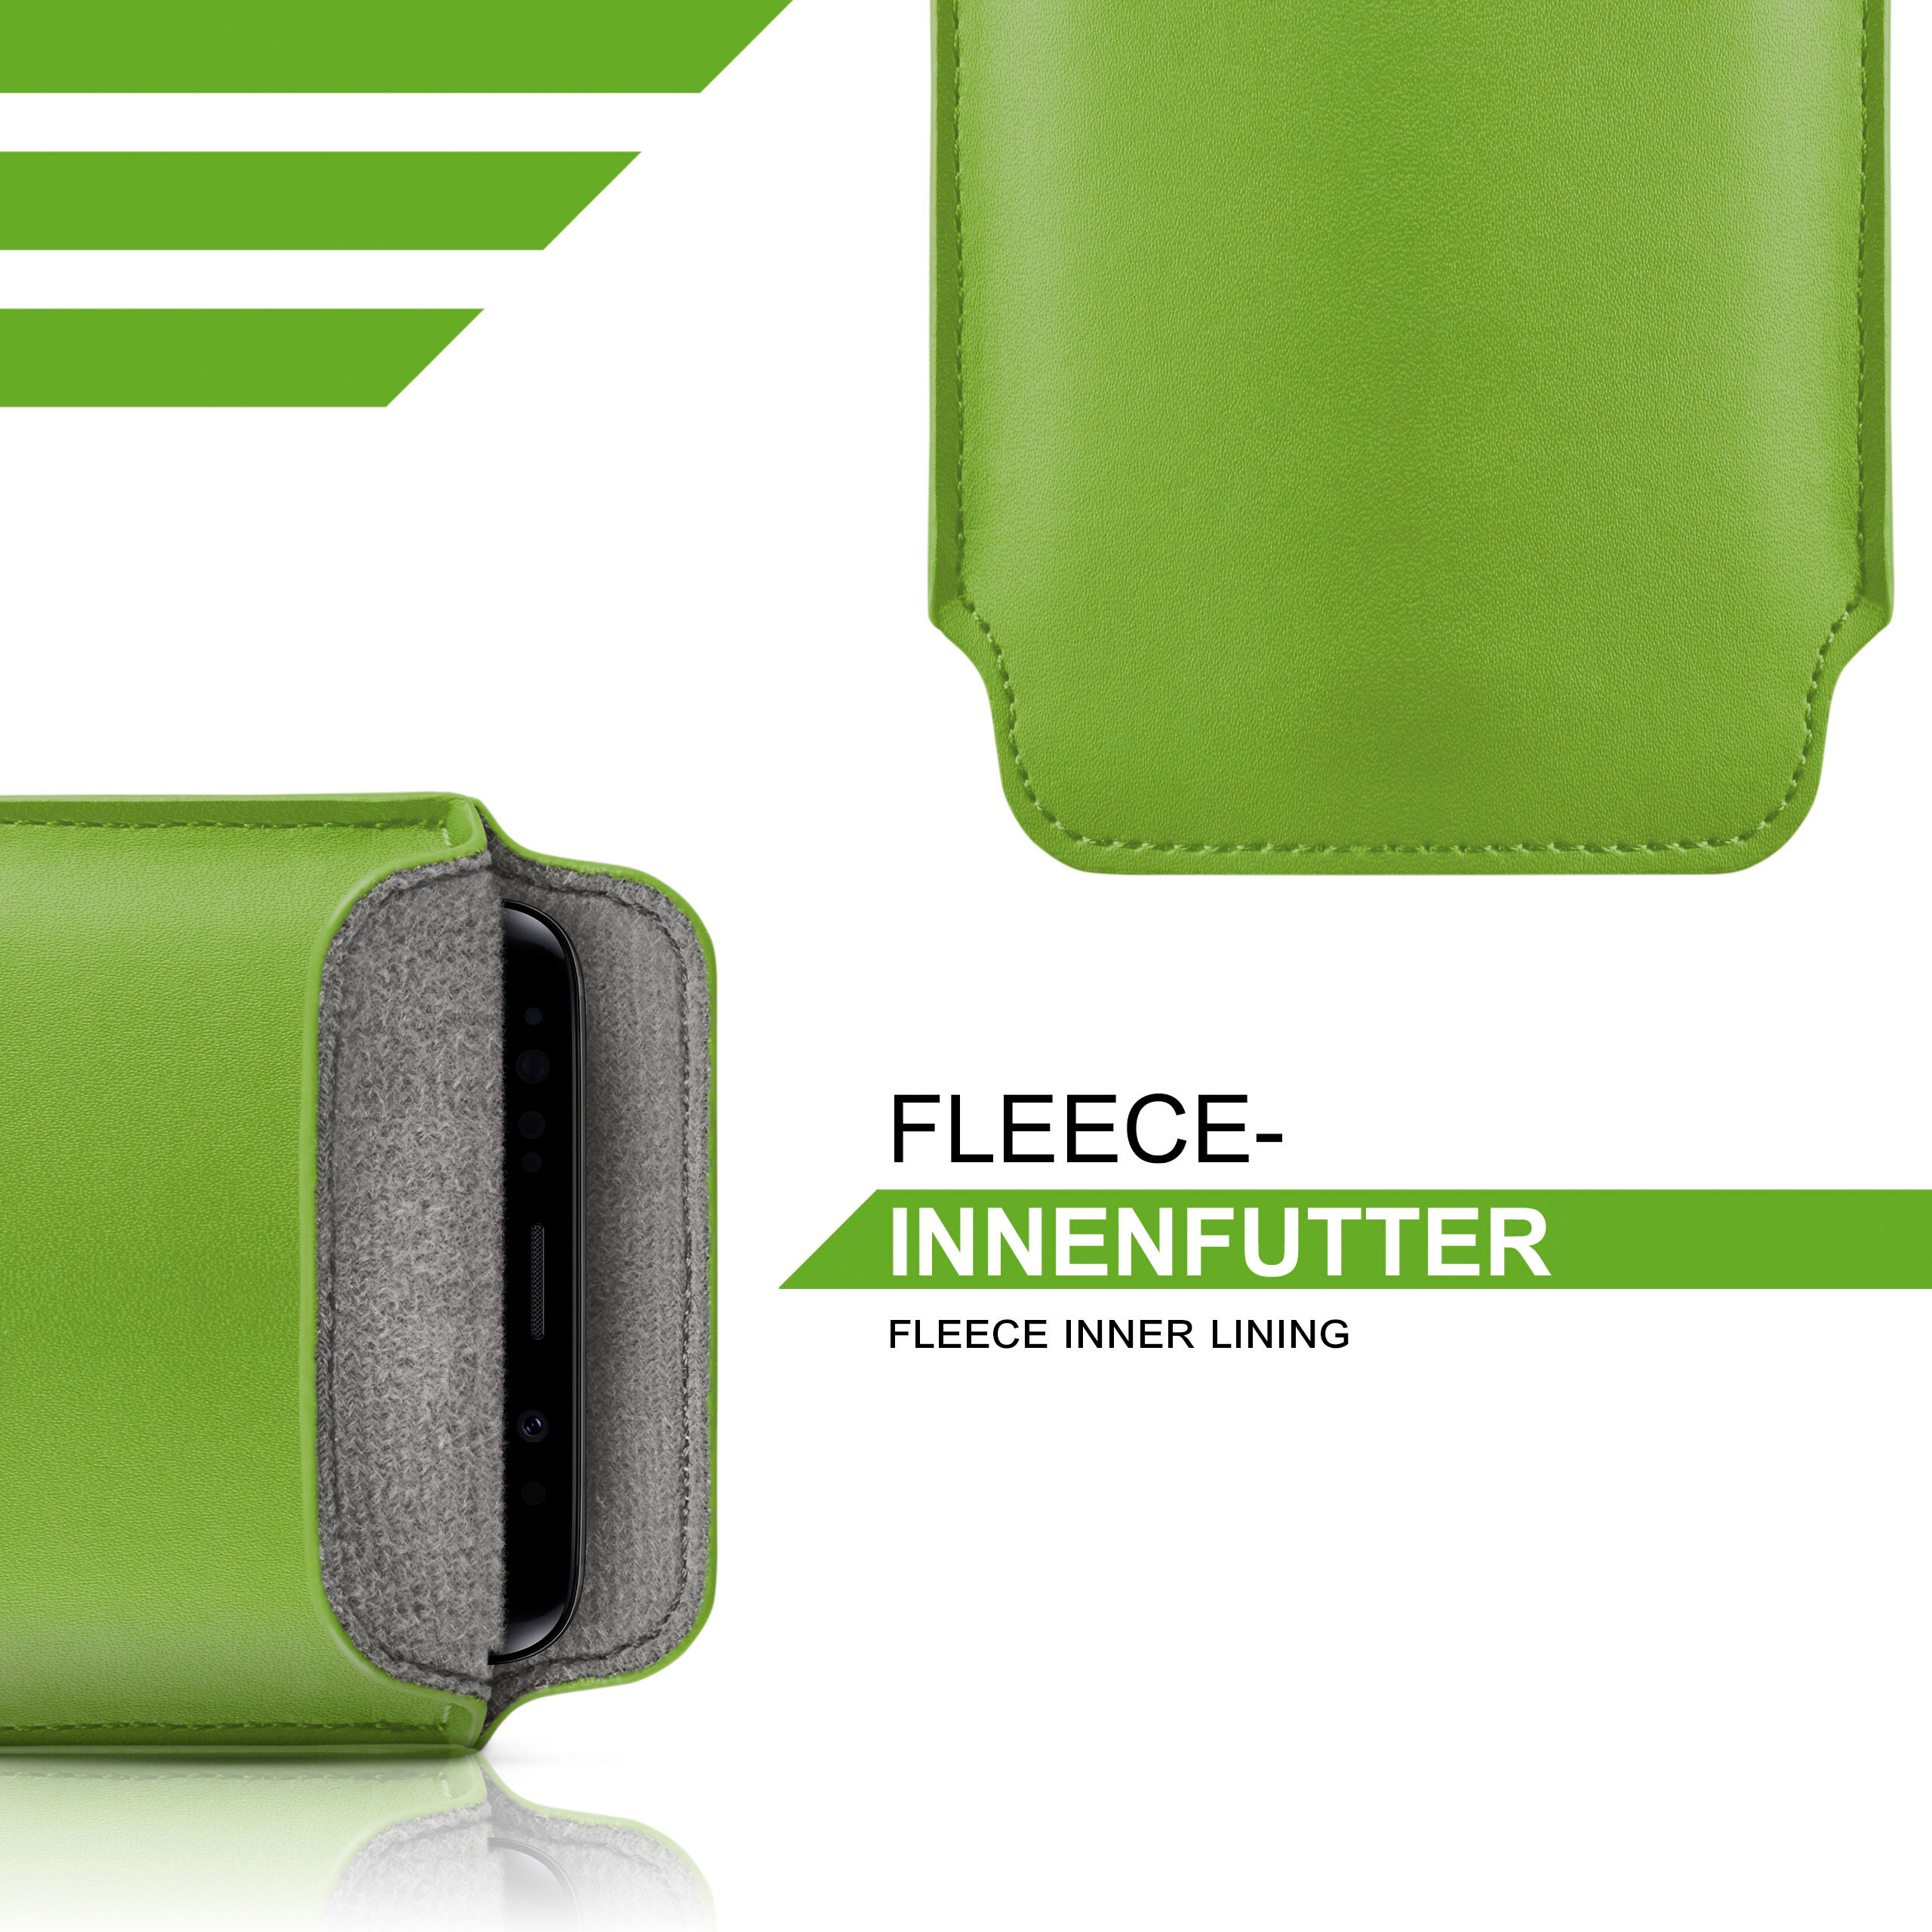 MOEX Slide V40 Cover, Case, Full ThinQ, LG, Lime-Green